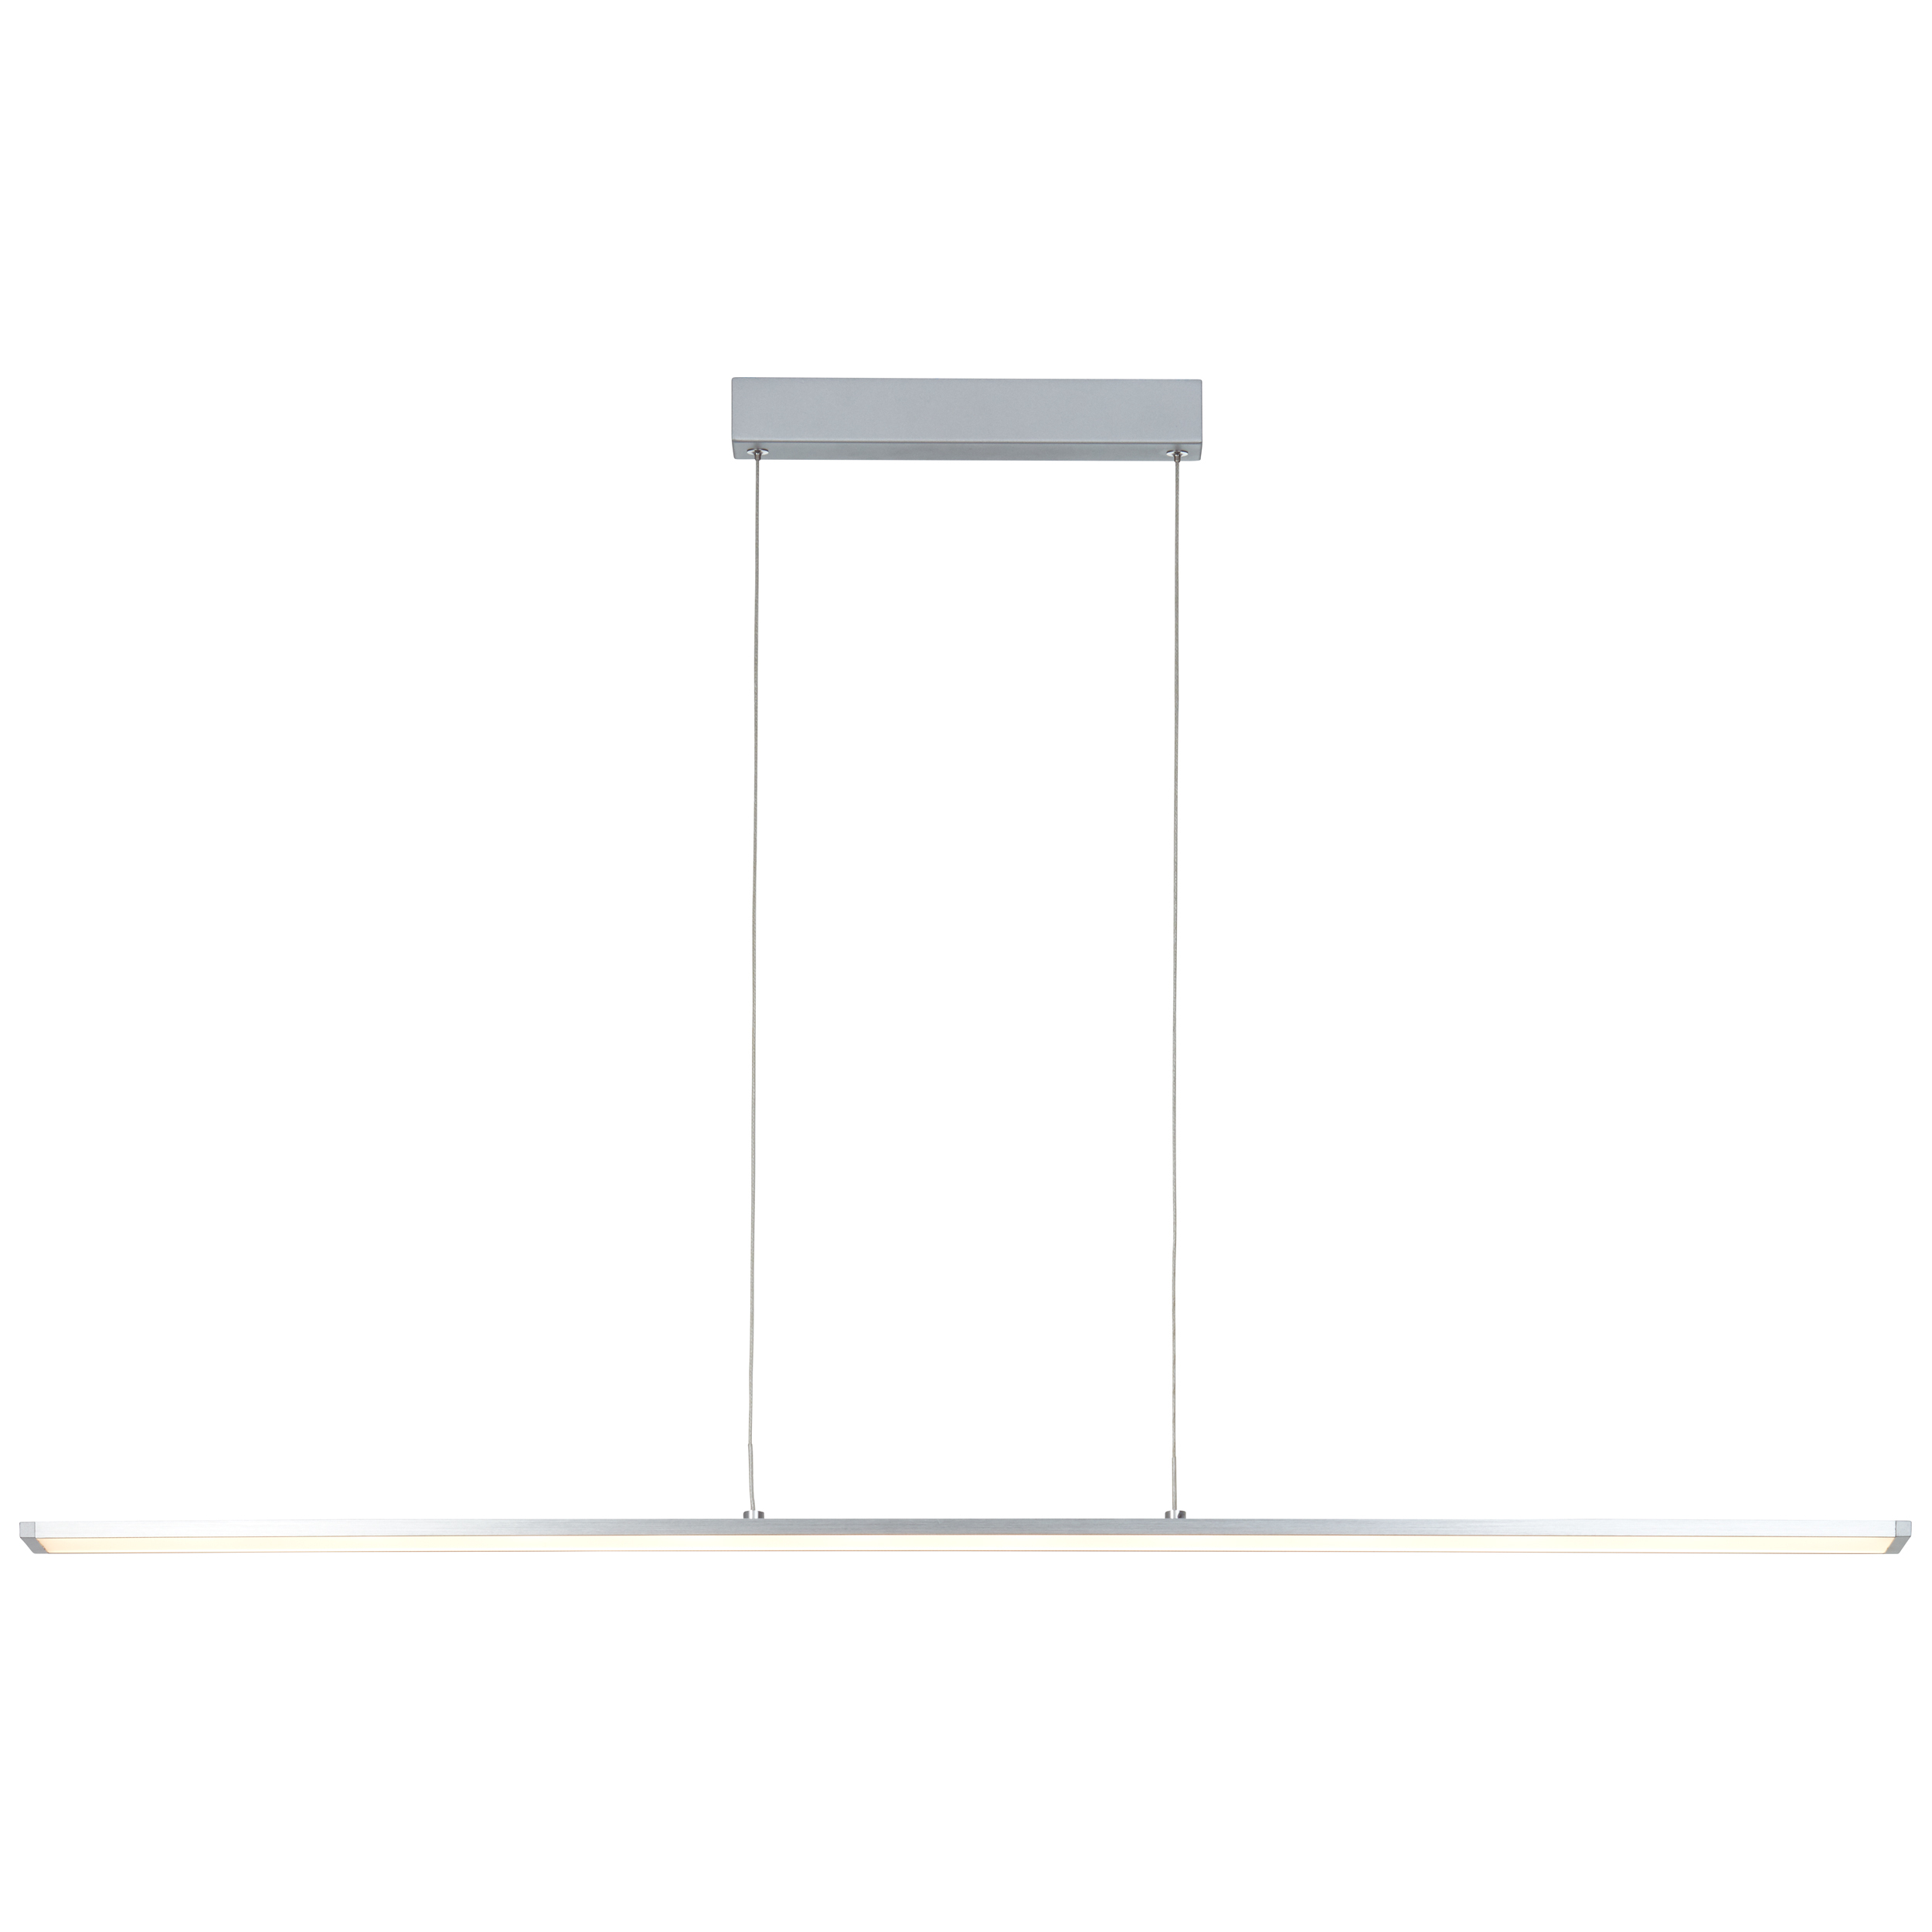 Entrance LED | Pendelleuchte 120cm alu/weiß Paneel easyDim G97028/21